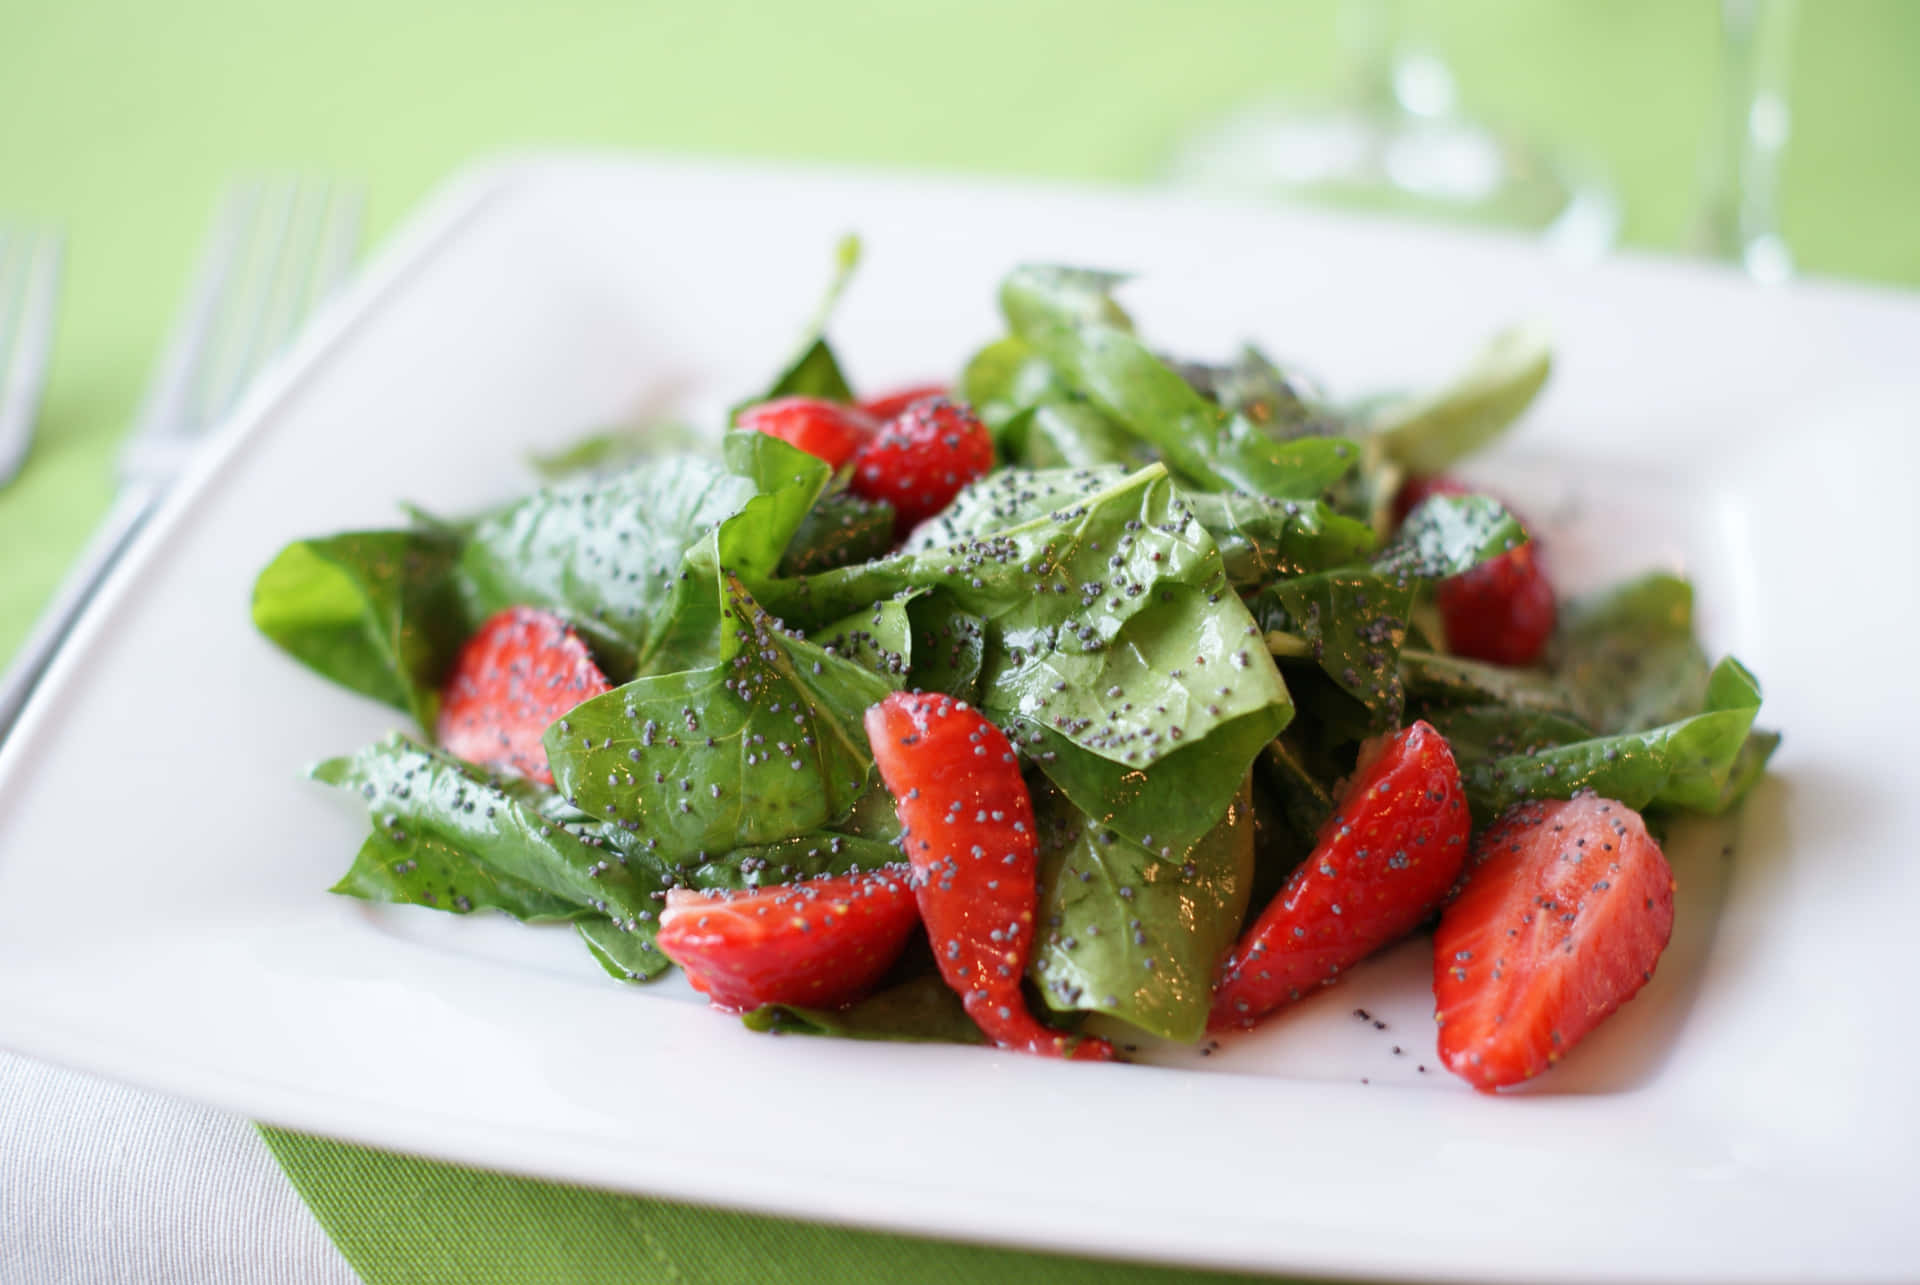 Enjoy a freshly prepared healthy salad!